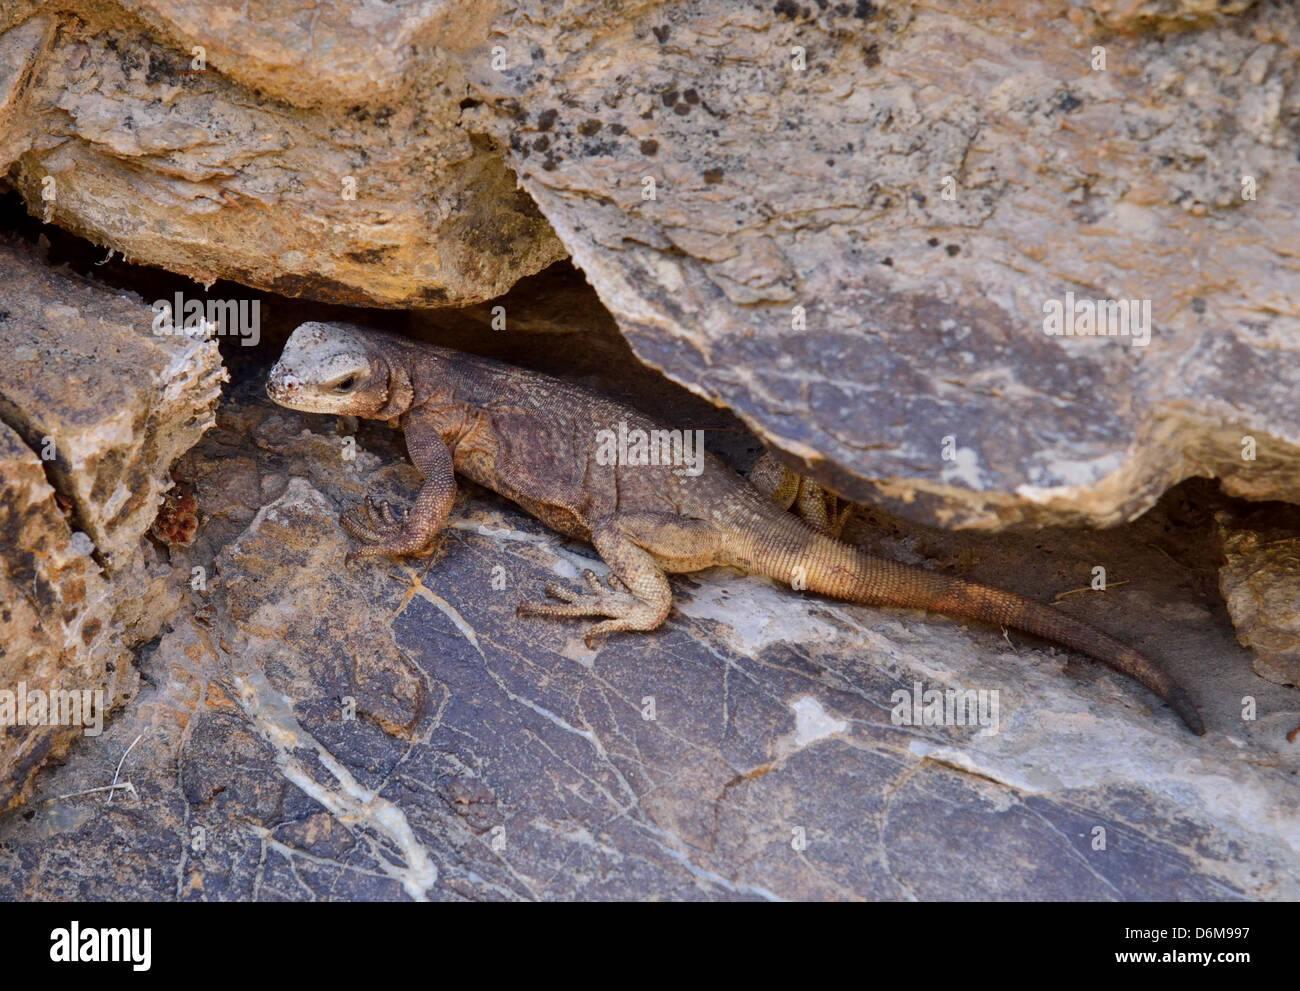 Una lucertola Chuckwalla (Sauromalus ater) nasconde dentro una crepa di pietra. Parco Nazionale della Valle della Morte, California, Stati Uniti d'America. Foto Stock